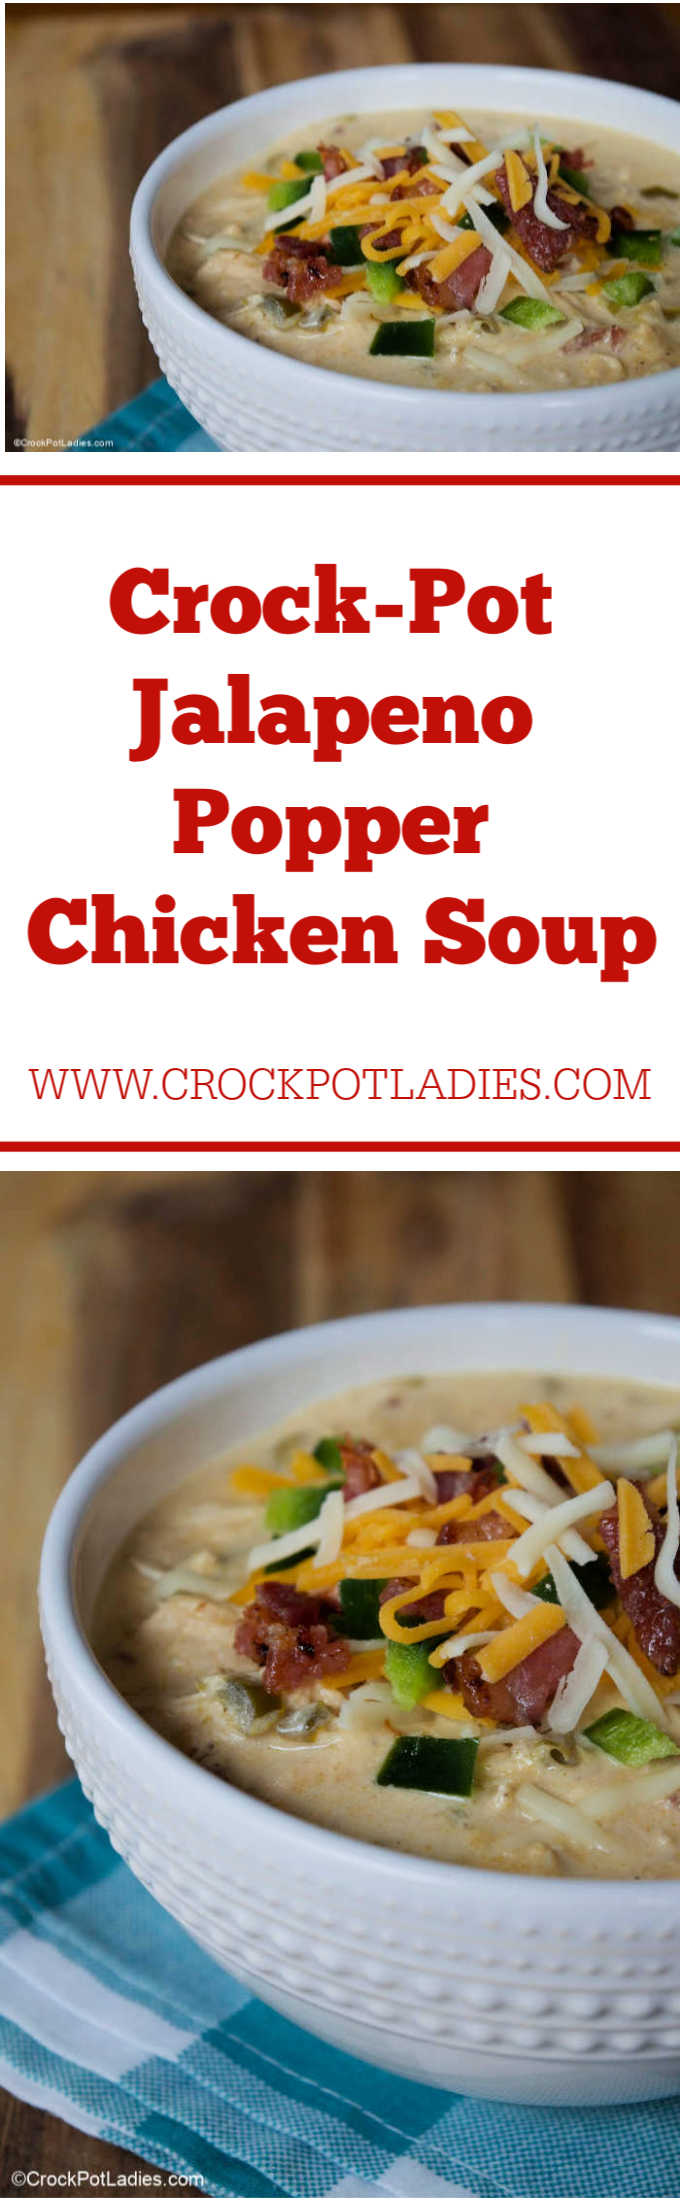 Crock-Pot Jalapeno Popper Chicken Soup